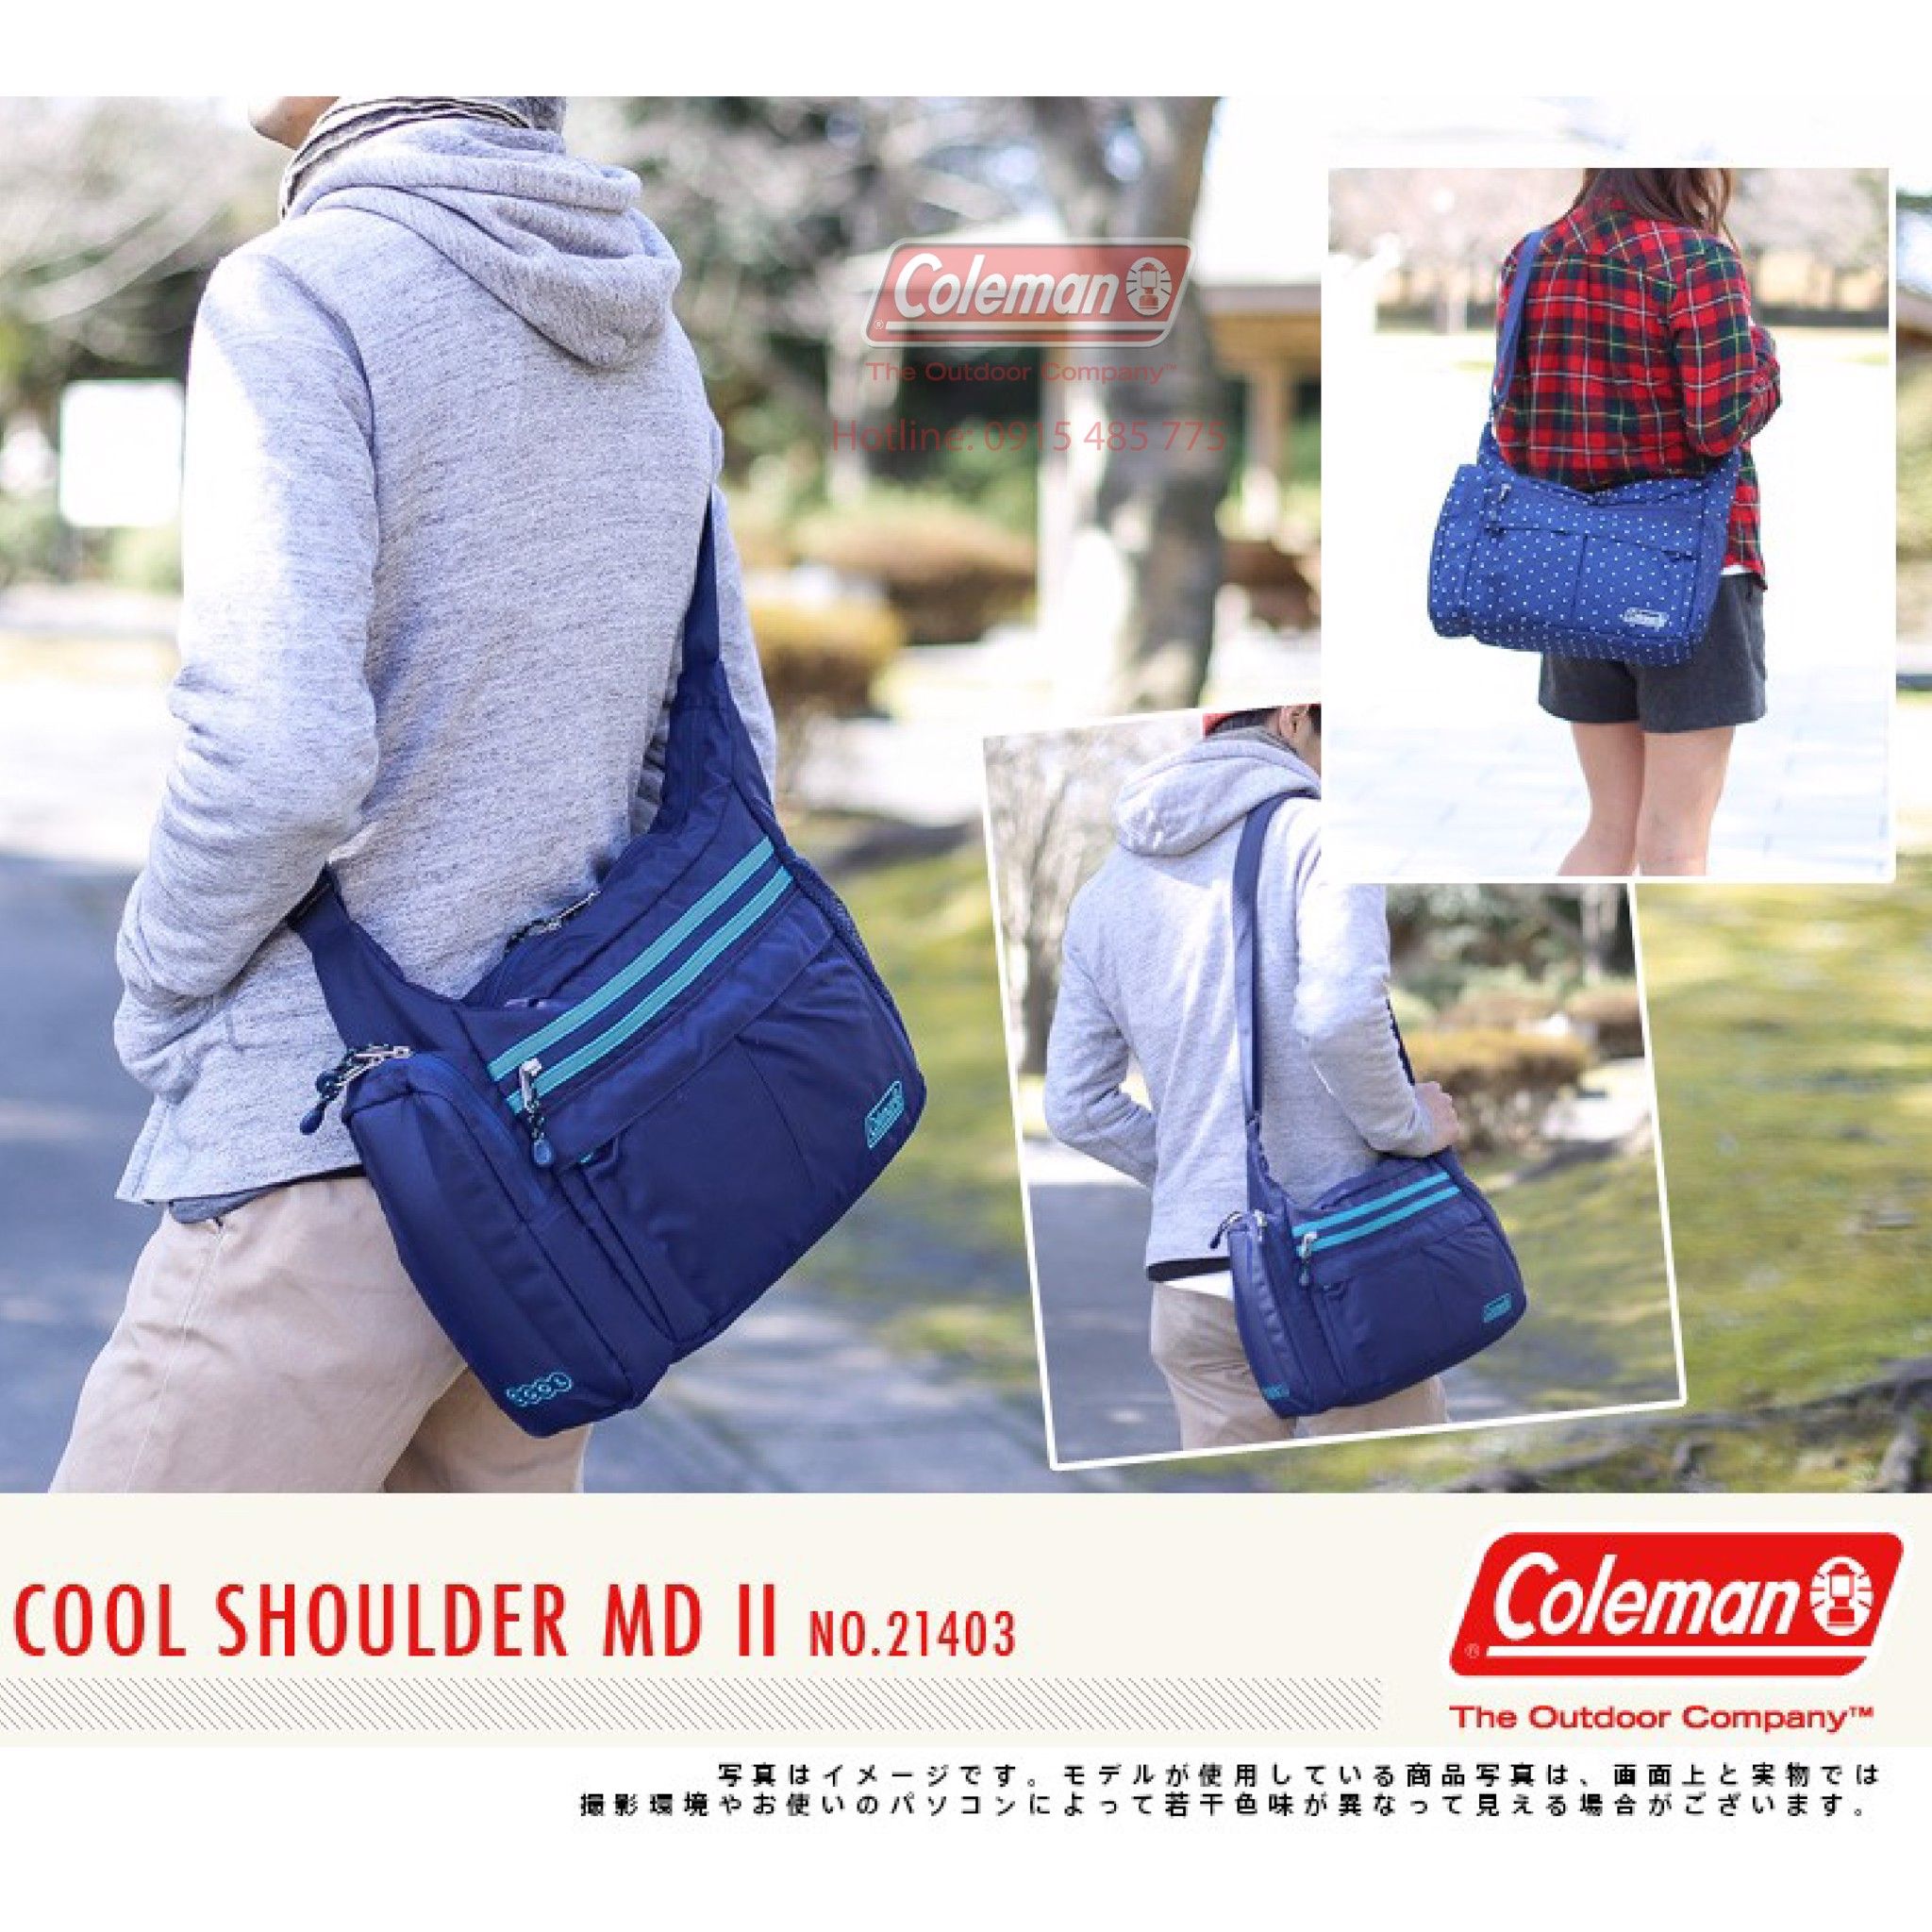  Túi đeo vai Coleman 2000021405 - xanh dương đậm COOL SHOULDER MD II 